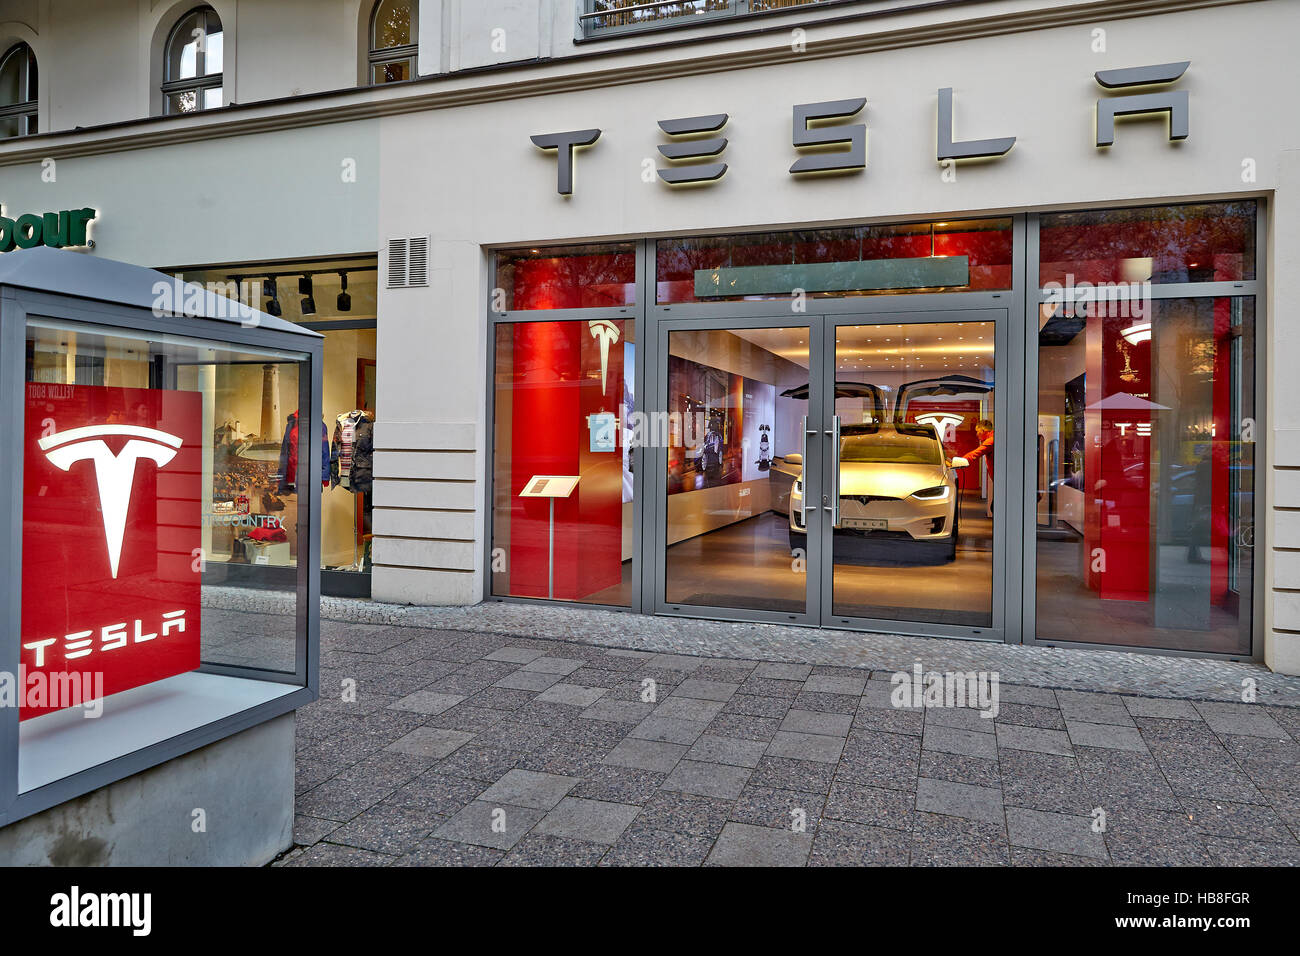 Afficher avec location, société de voiture électrique Tesla Motors, Kurfürstendamm, Berlin, Allemagne Banque D'Images